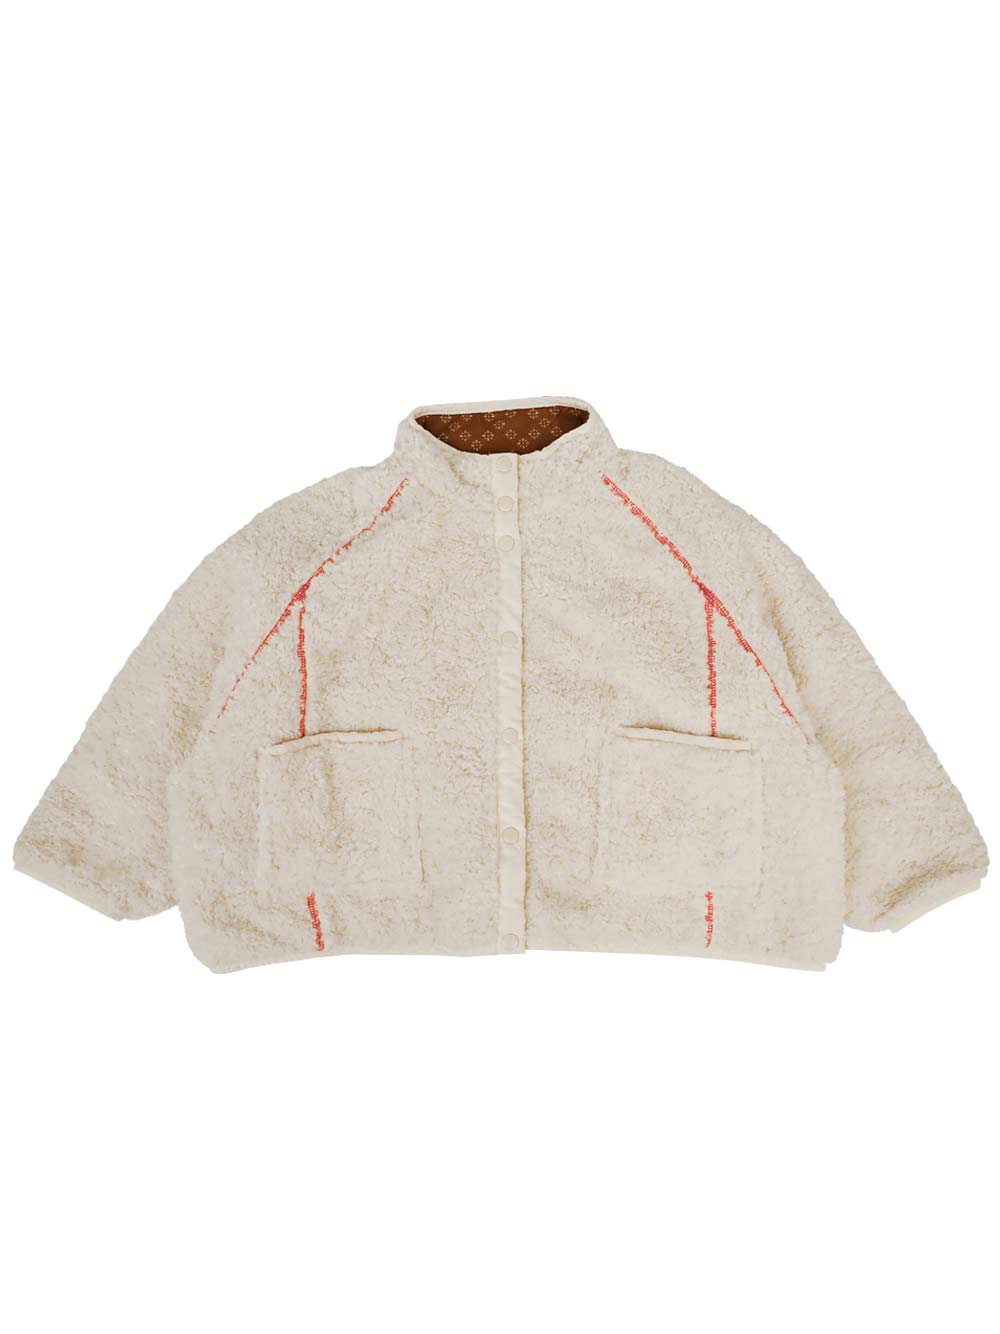 Ivory Reversible Shearing Jacket